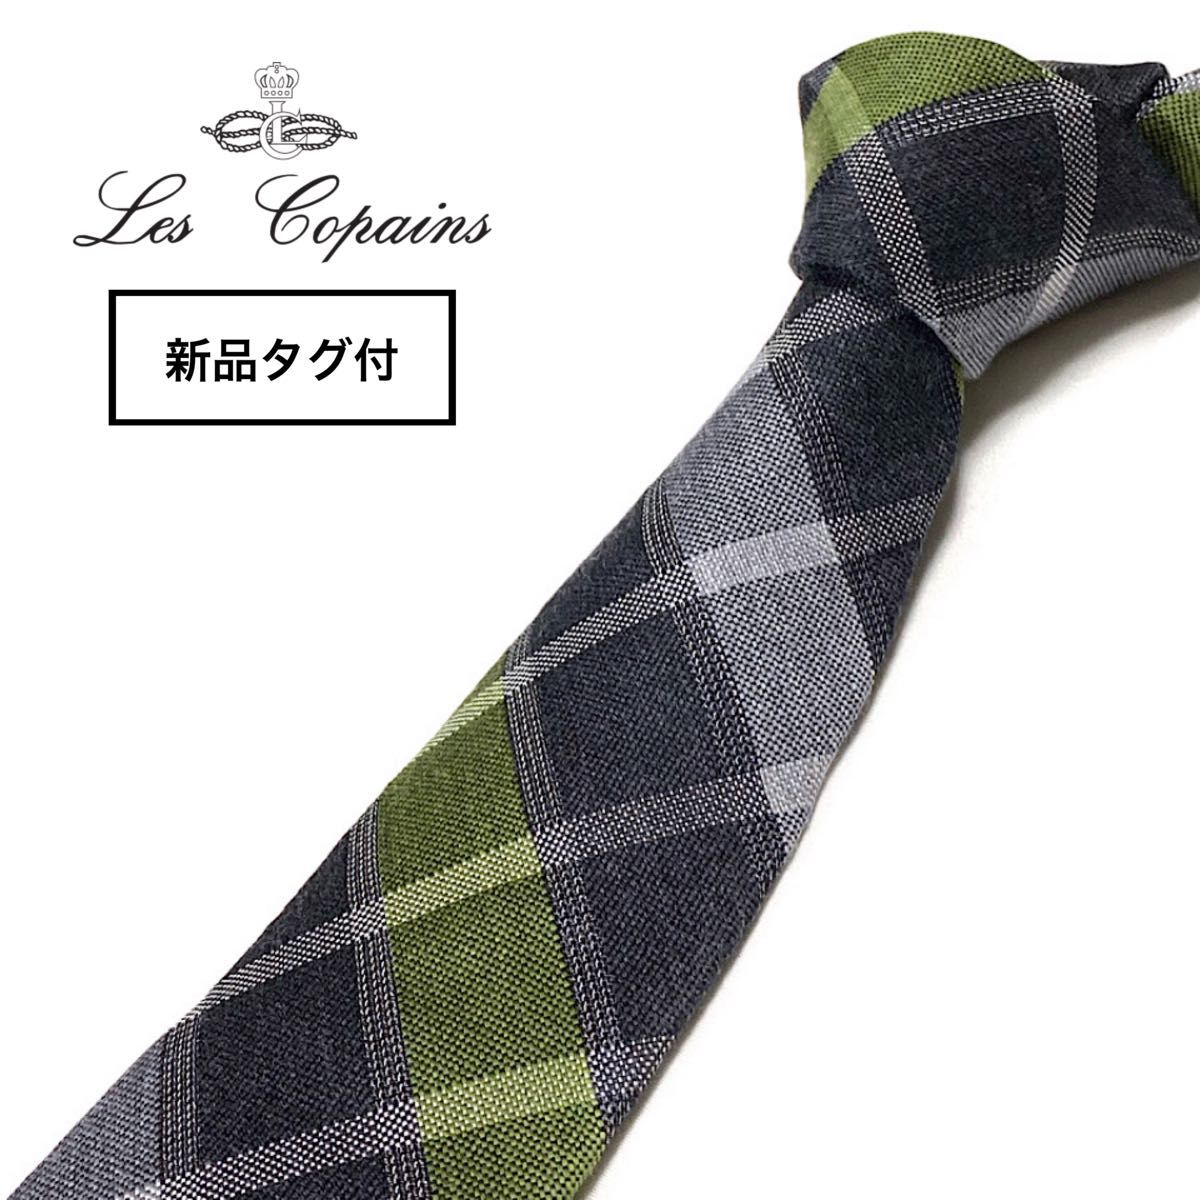 【新品タグ付】イタリアファクトリーブランド Les copains レコパン ネクタイ イタリア製 チェック柄 グレー グリーン